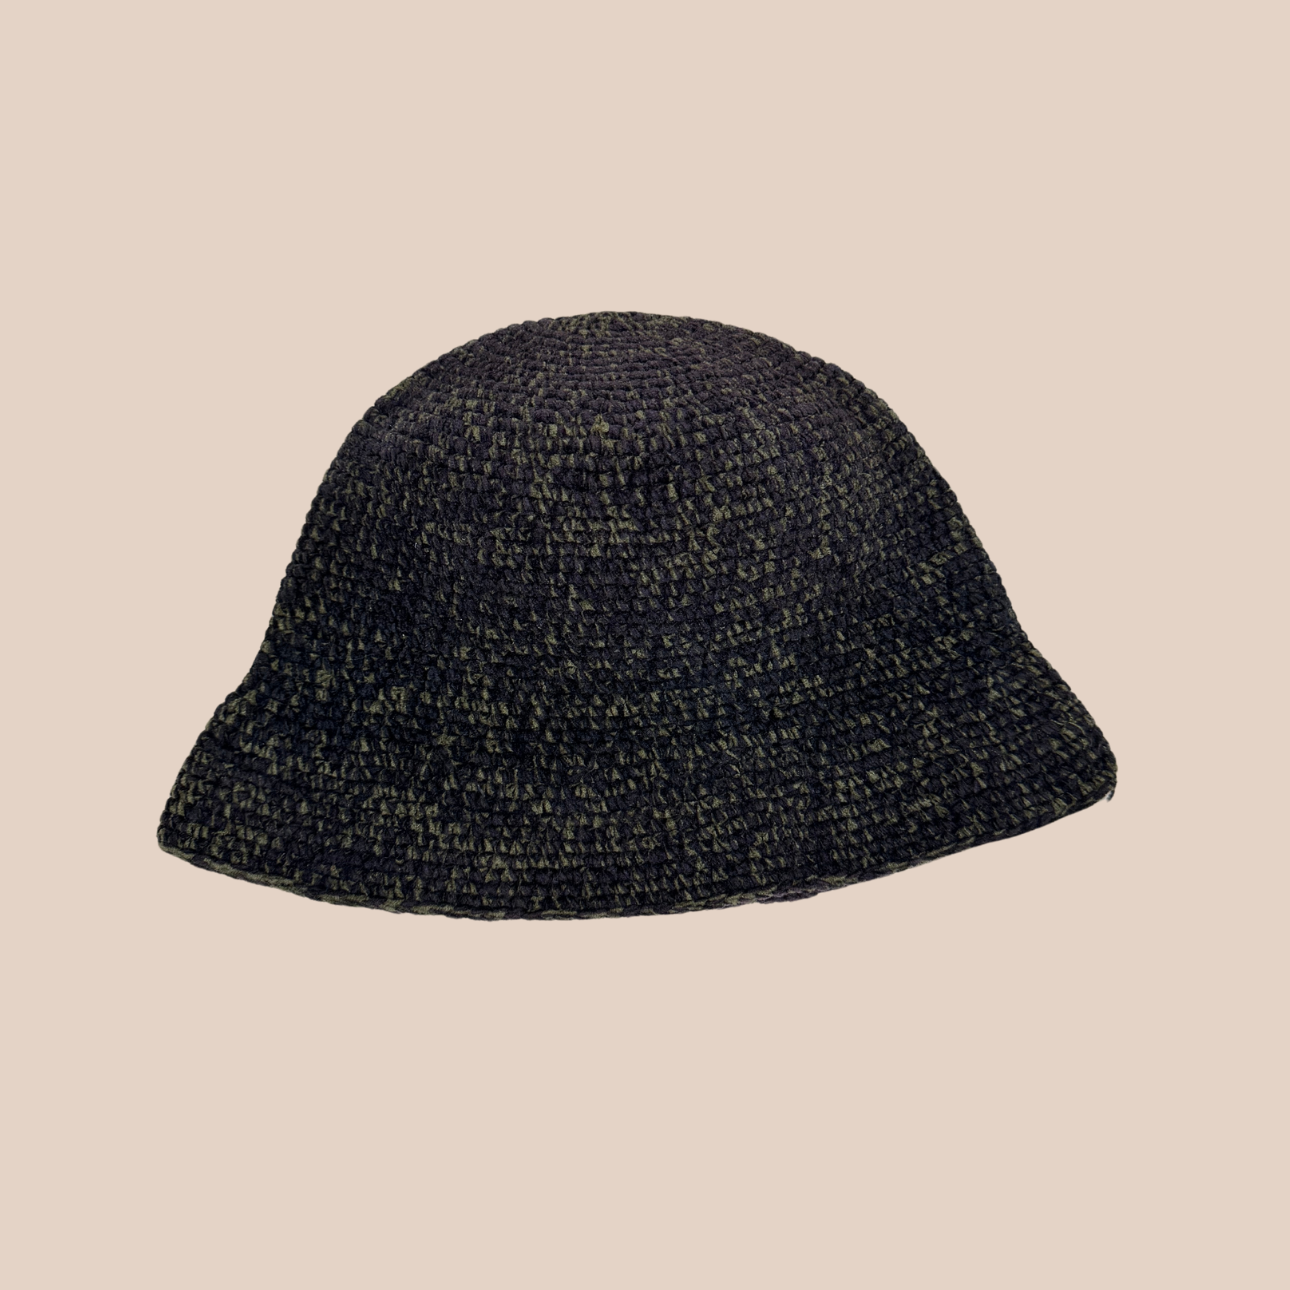 Un bucket hat crocheté en laine et acrylique, couleurs sombres